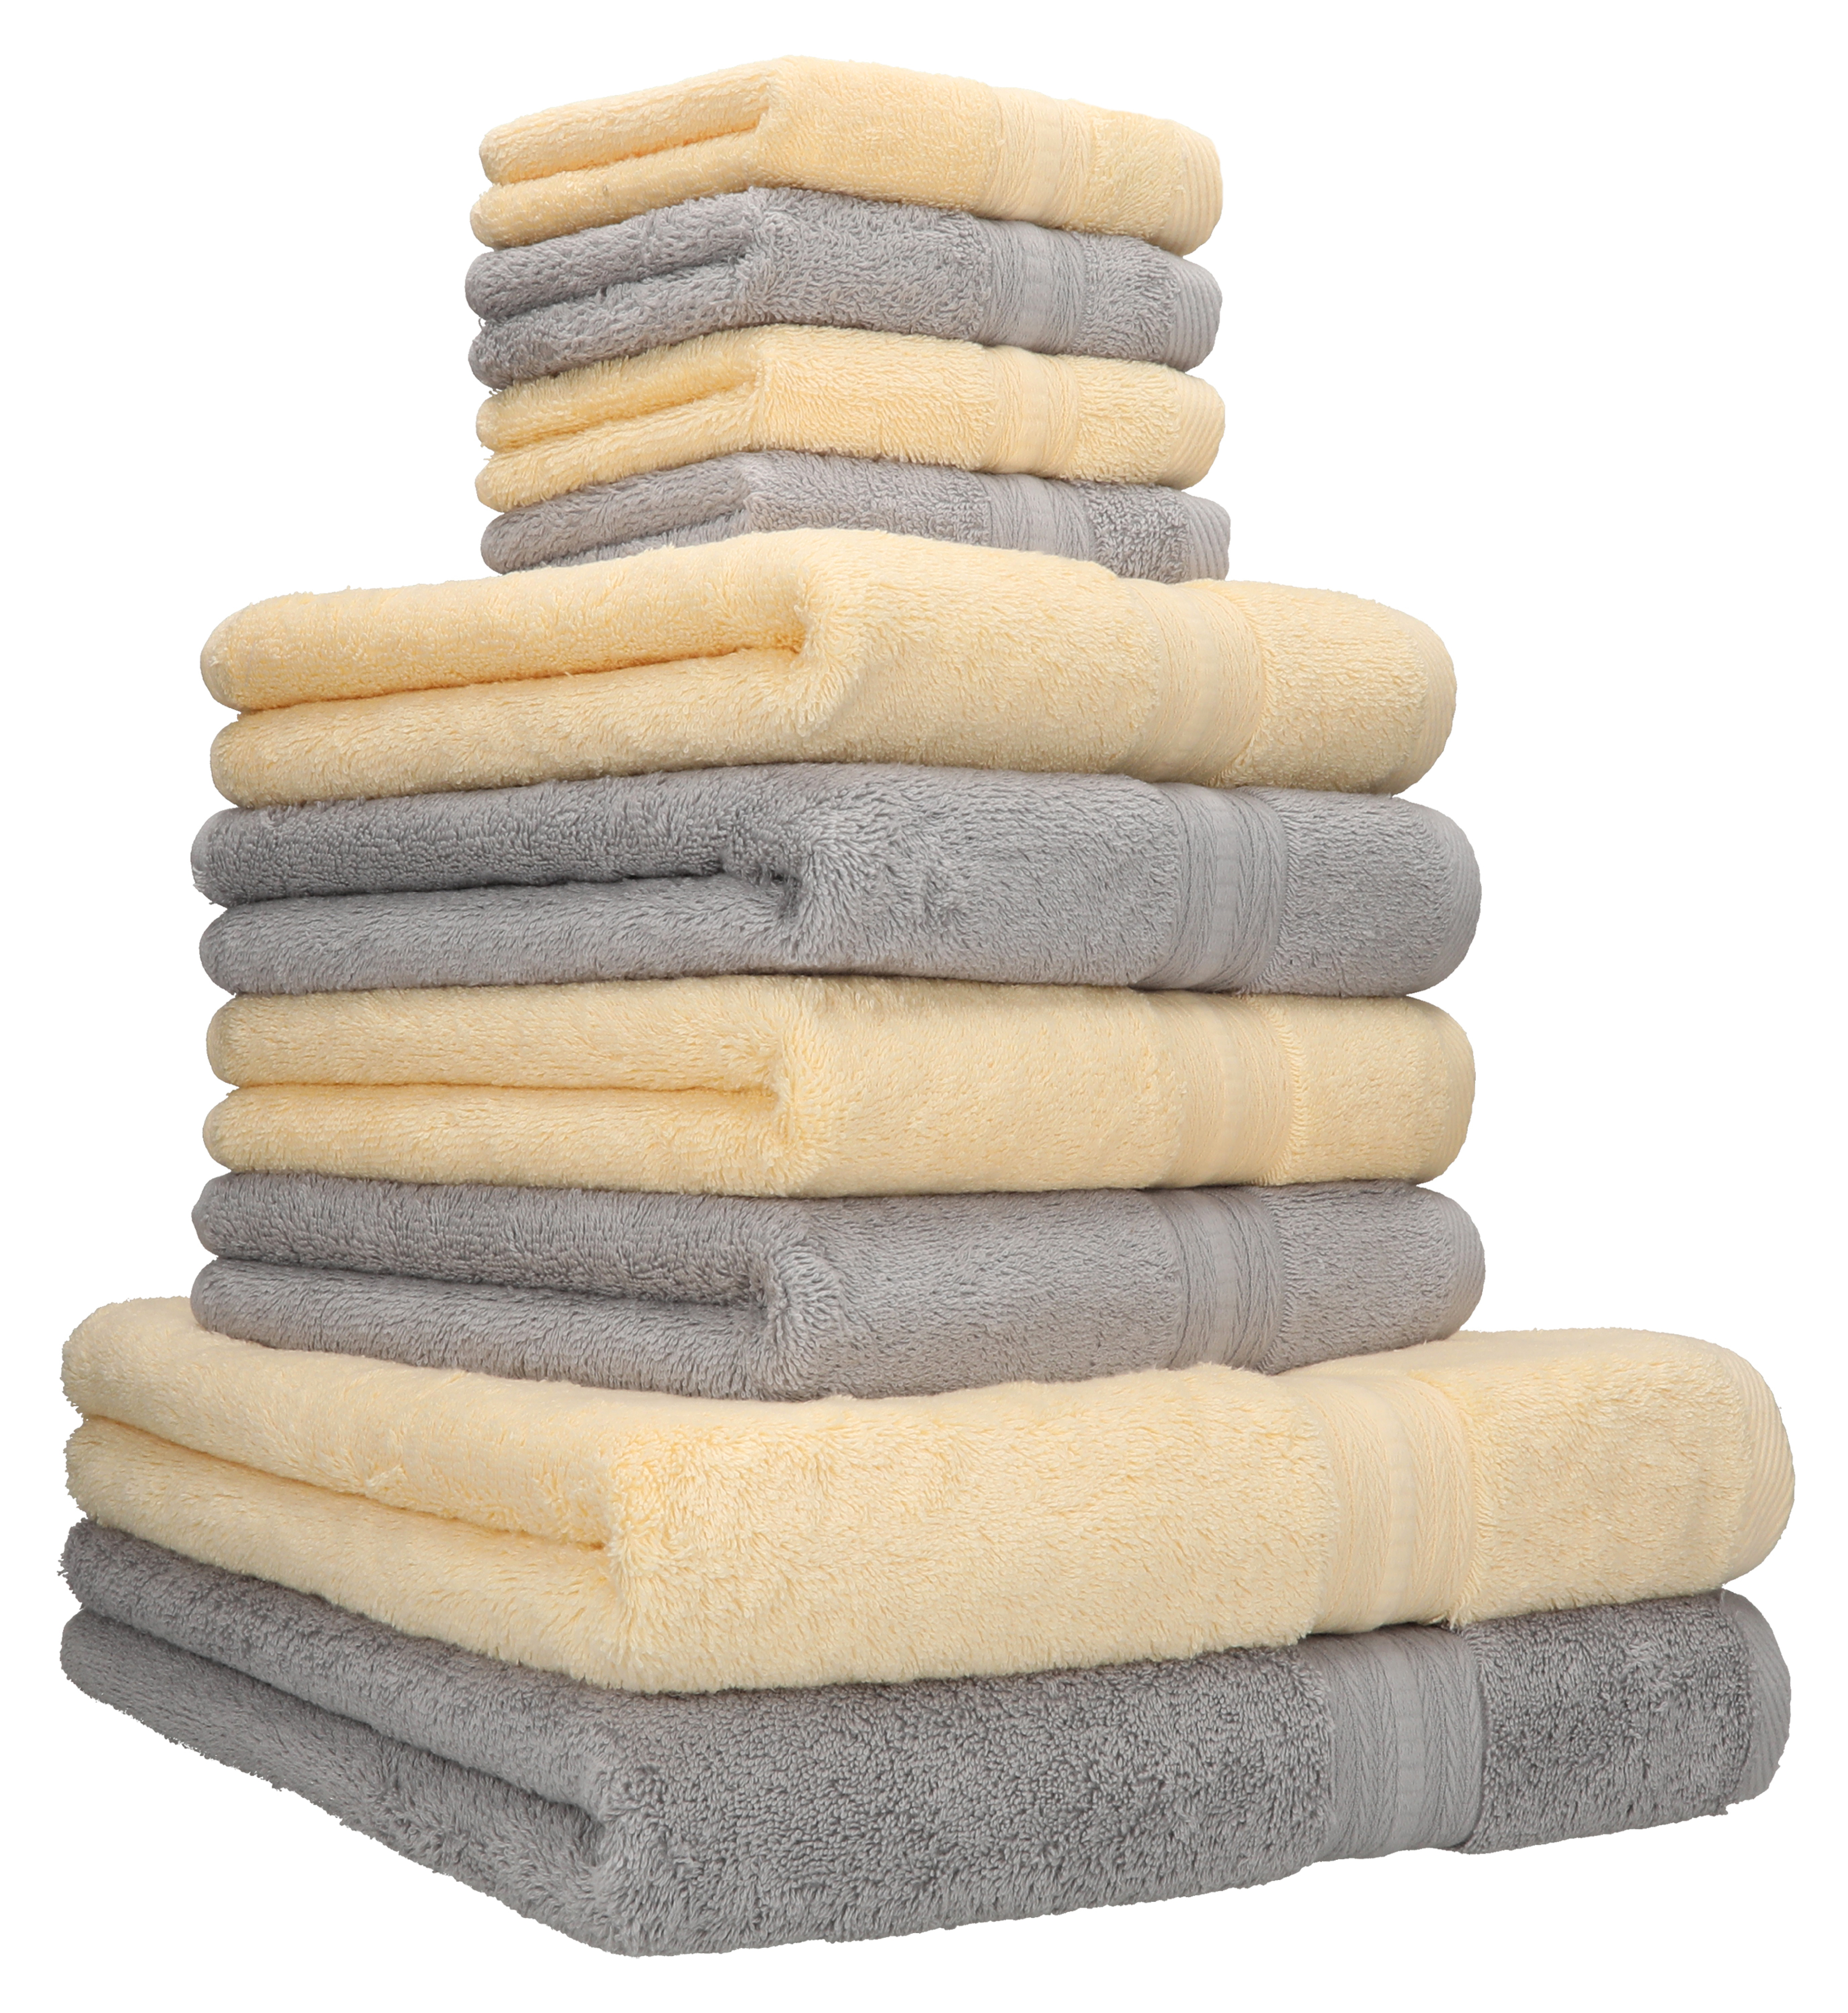 Betz 10-tlg. Handtuch-Set GOLD Luxus 100% 600g/m² Baumwolle 2 Duschtücher Qualität 4